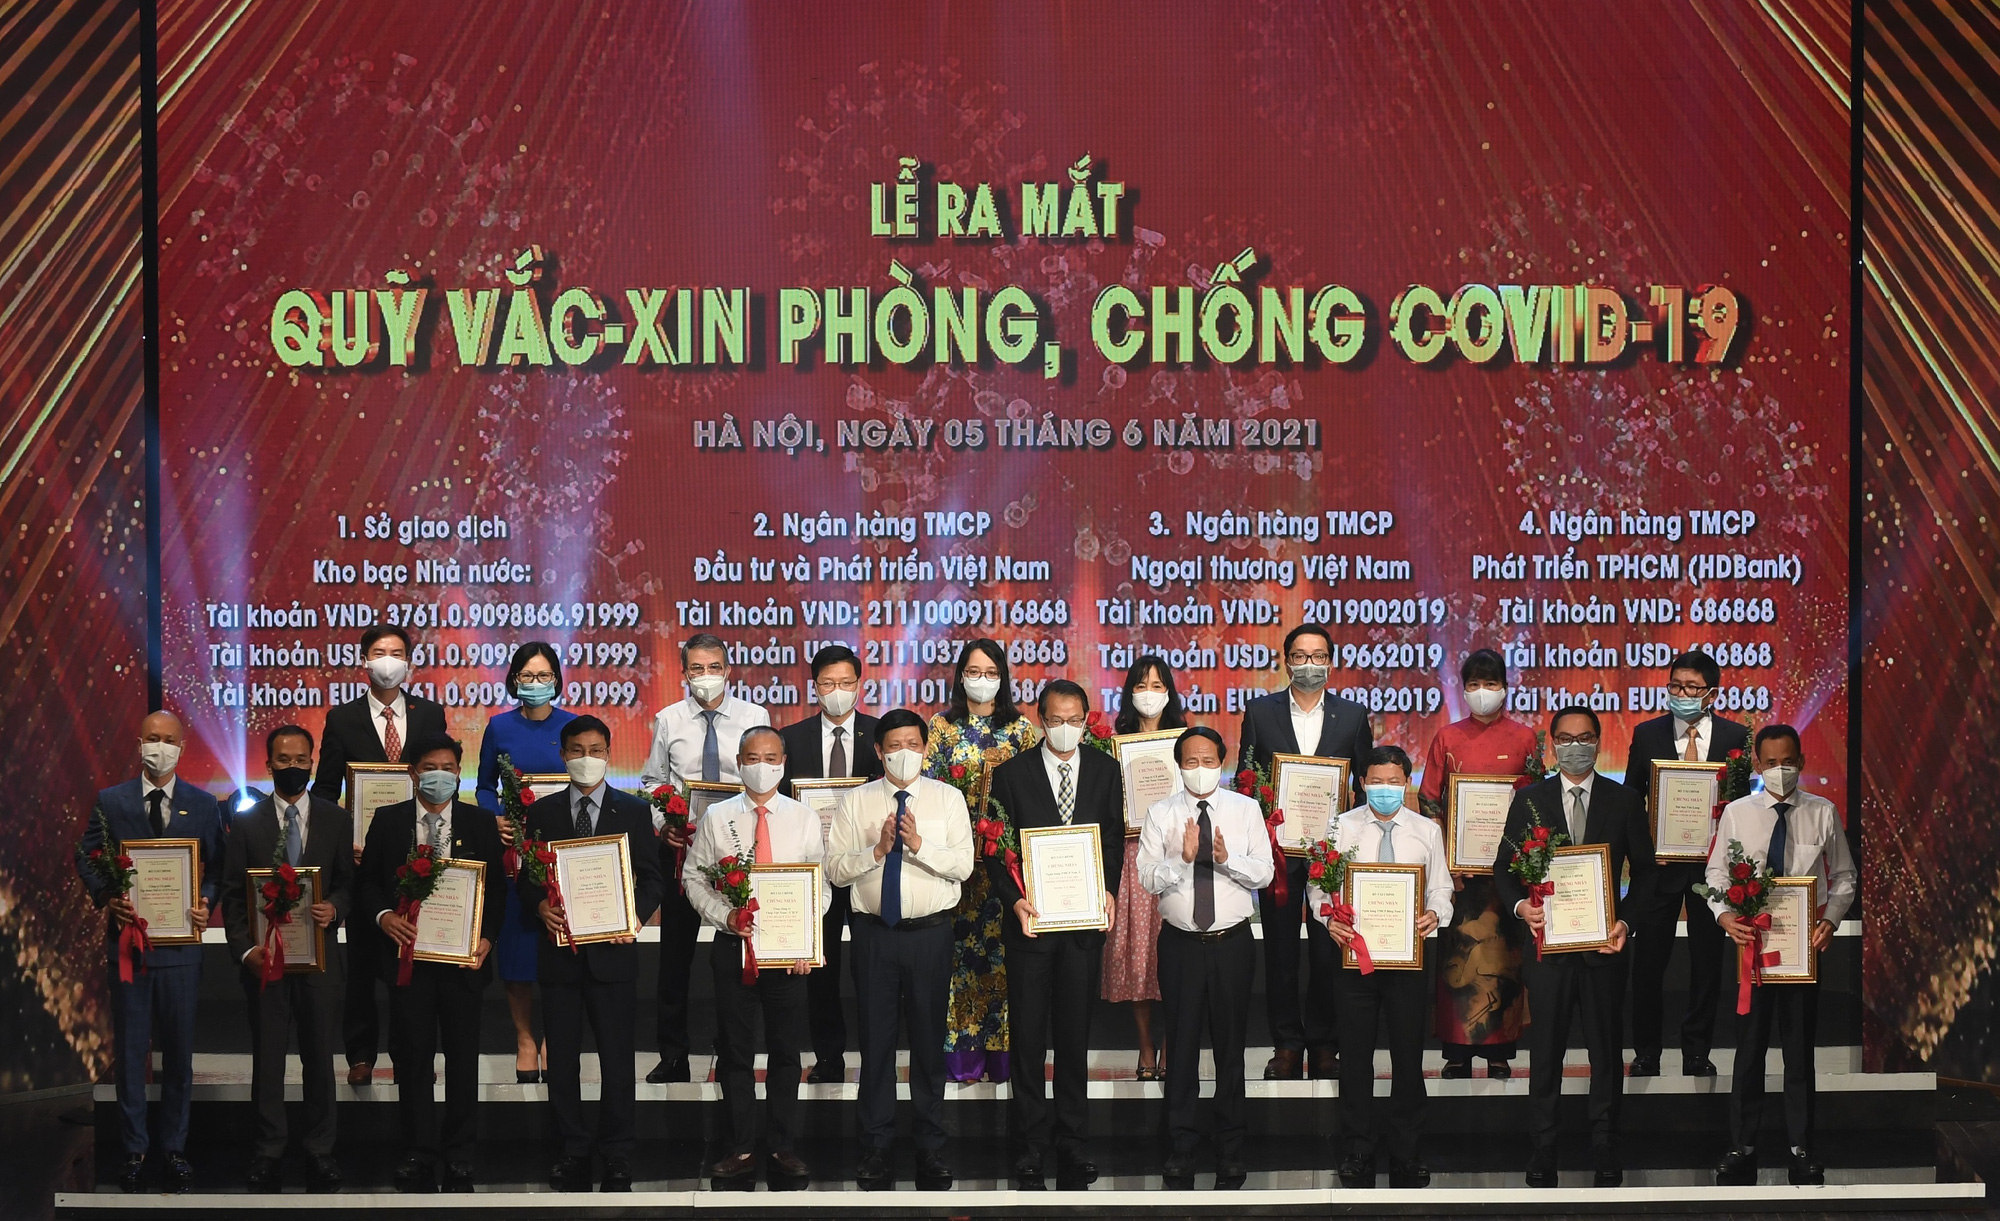 Toyota Việt Nam ủng hộ 10 tỷ đồng cho Quỹ Vaccine phòng Covid-19 - Ảnh 2.